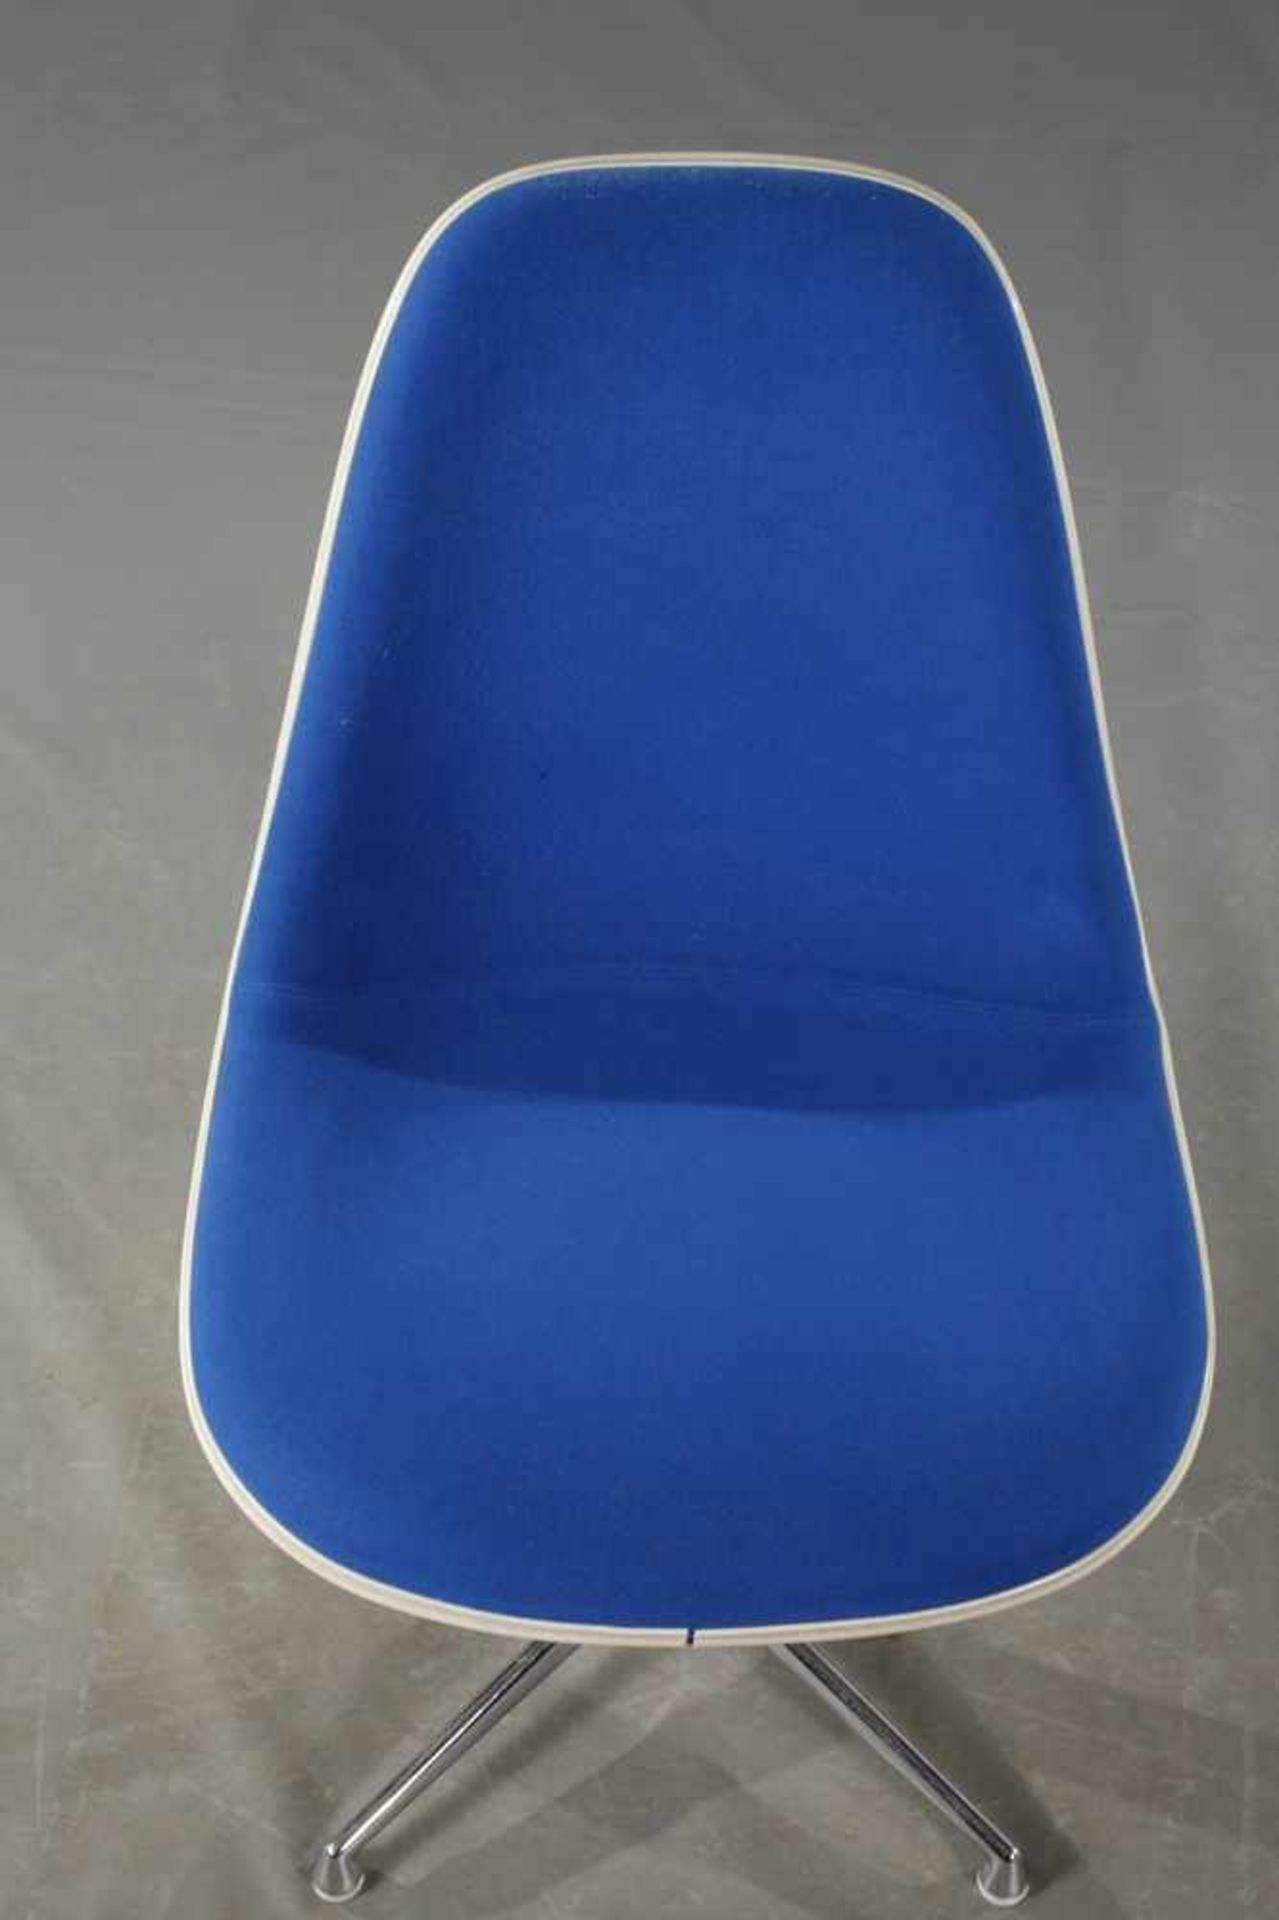 Vier Stühle "Lafonda" Charles & Ray Eames Entwurf 1961, Herstellung Vitra Weil am Rhein, Sitzschalen - Bild 4 aus 7